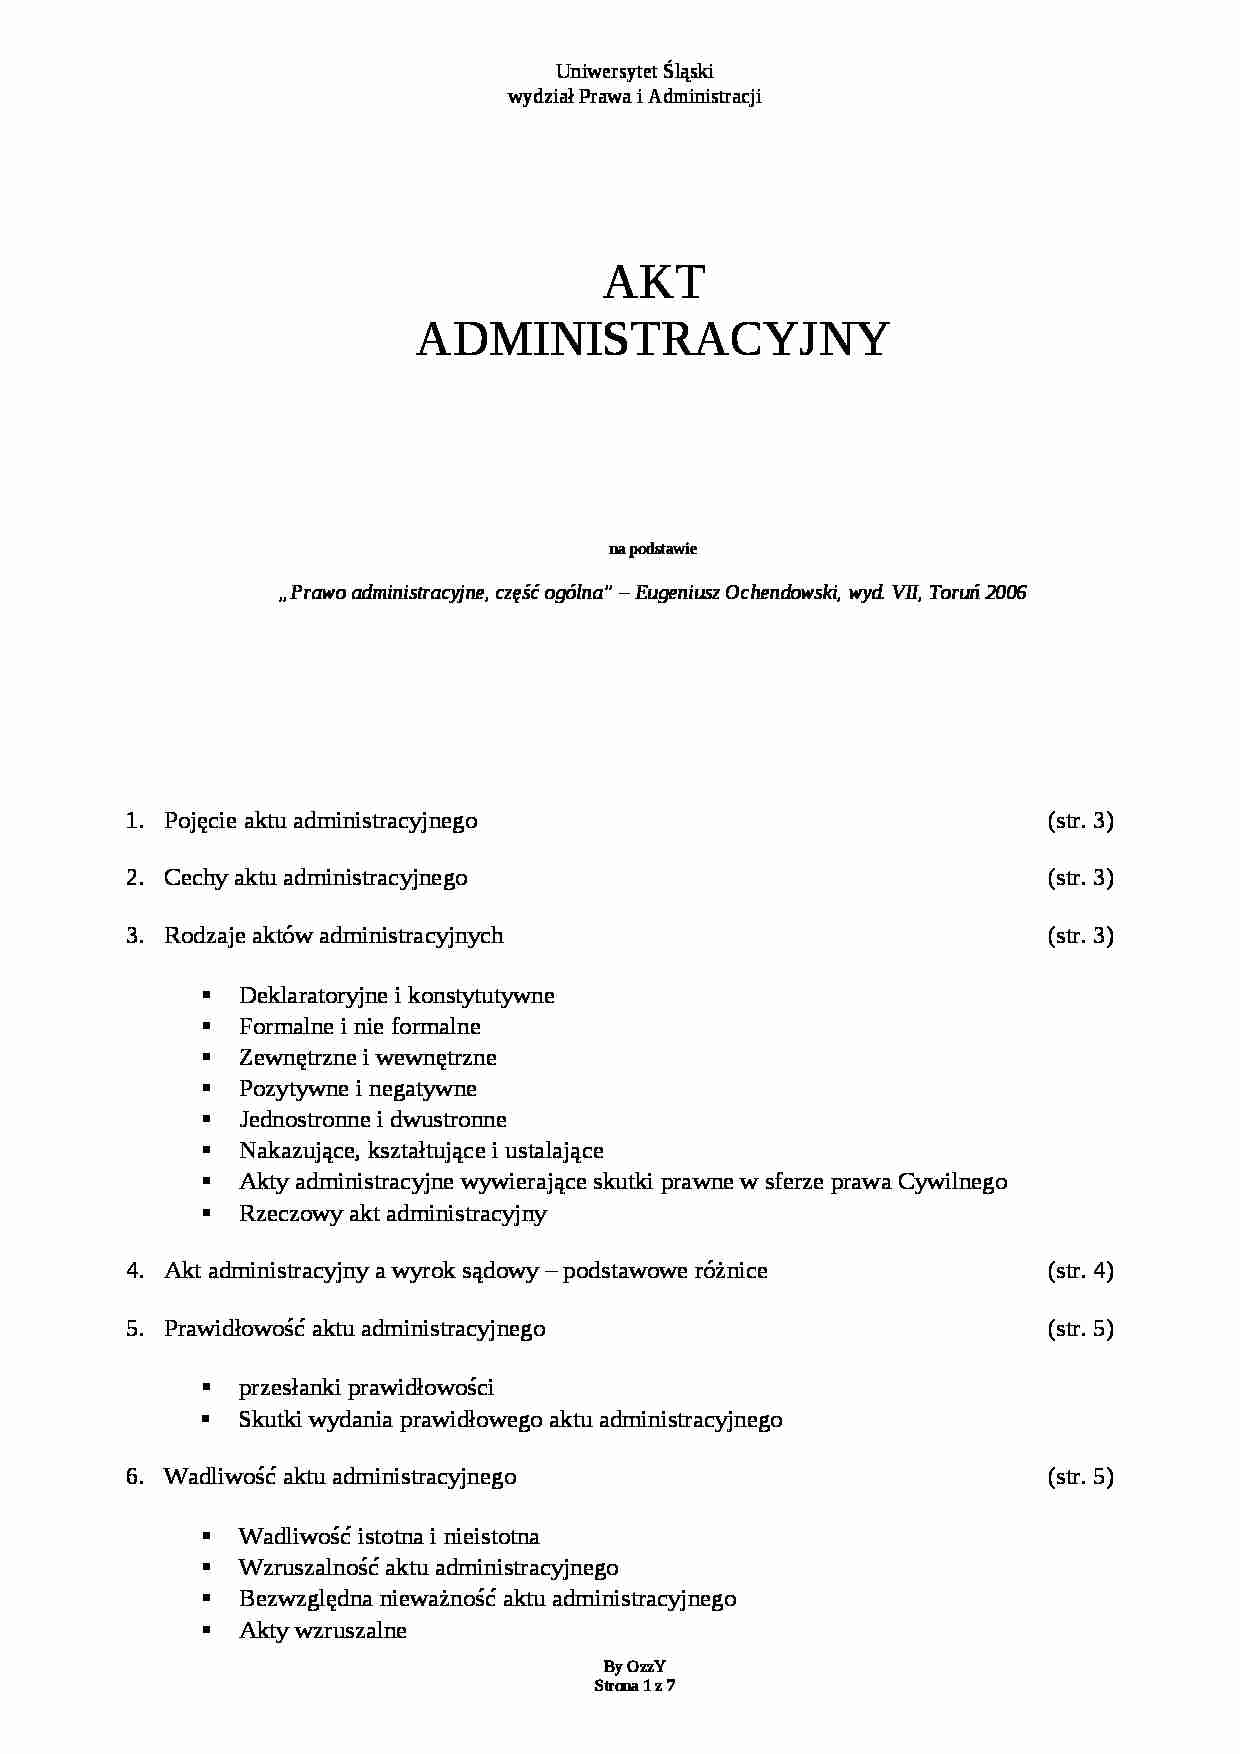 akt administracyjny - Prawo formalne - strona 1